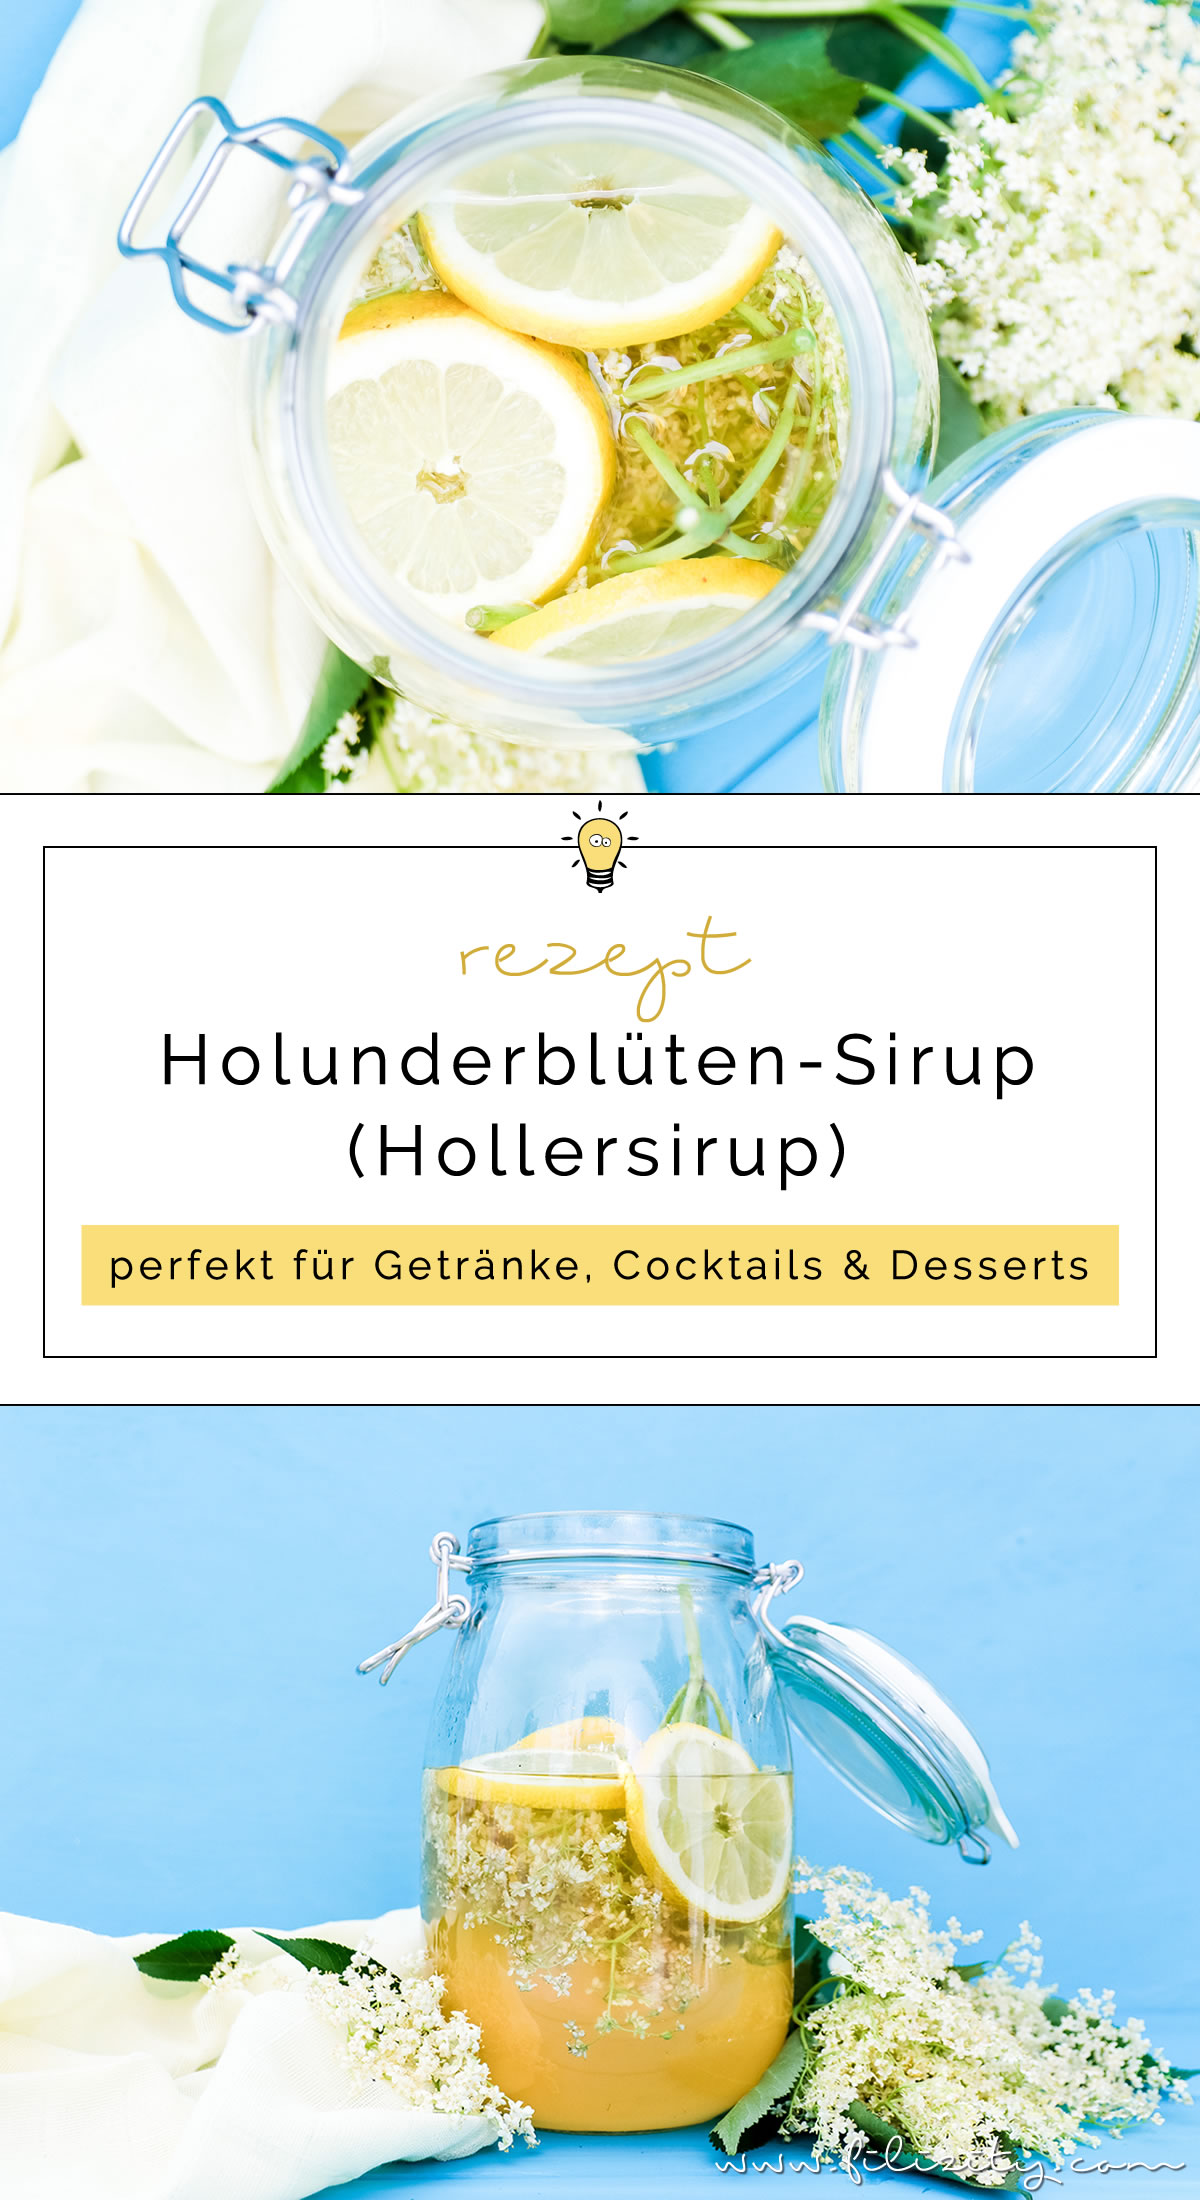 Holunderblüten-Sirup / Hollersirup selber machen - So geht's | Einfaches Rezept mit nur 3 Zutaten | Filizity.com | Food-Blog aus dem Rheinland #holunder #holler #sommer